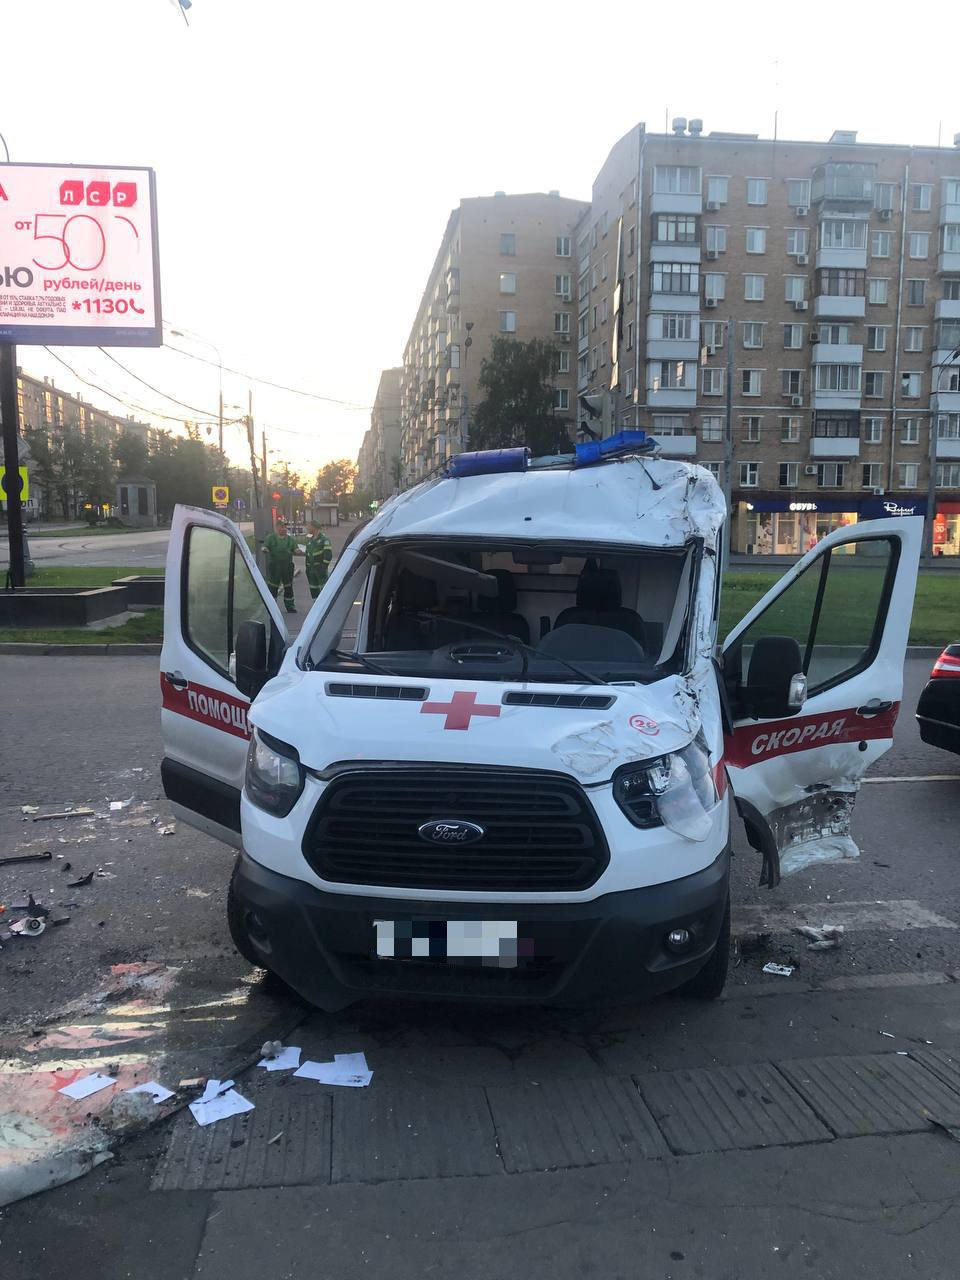 Таксист в Москве отправил скорую кувыркаться. На видео — его фатальная ошибка